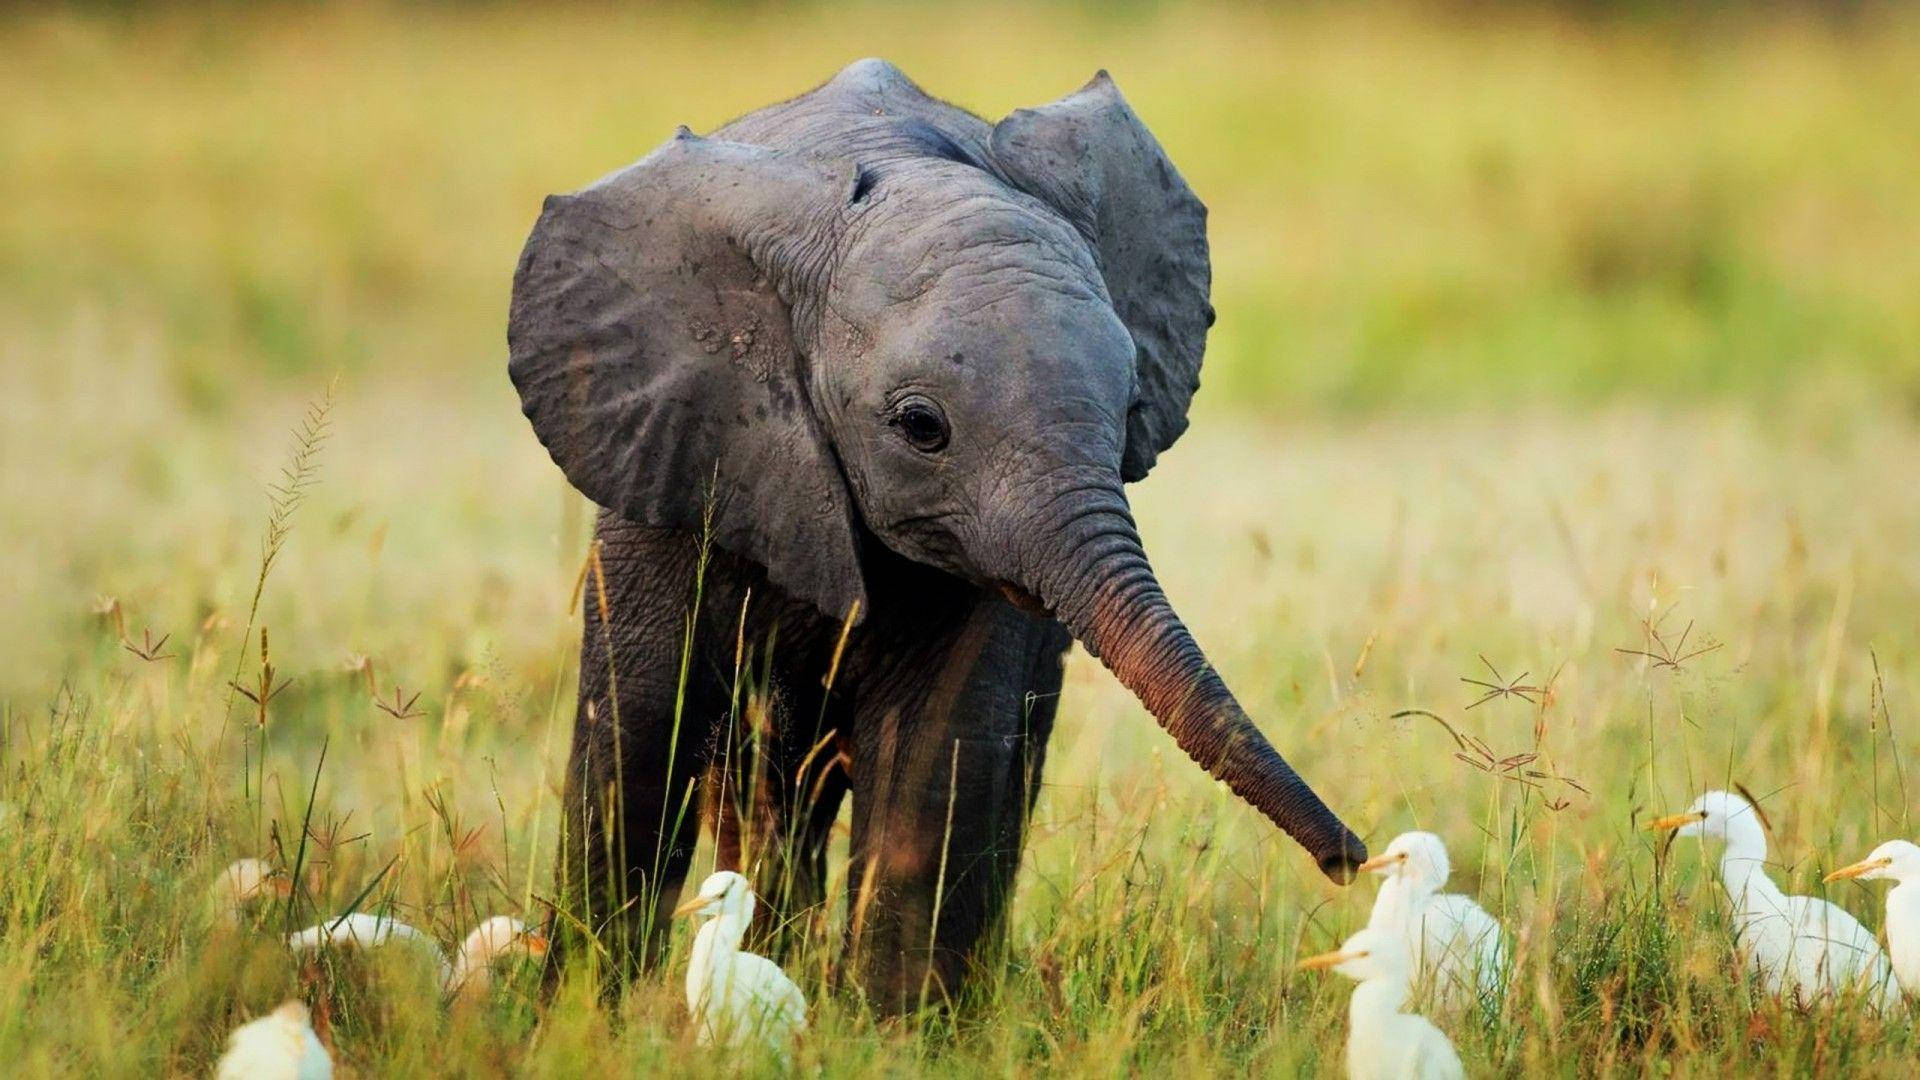 Einmajestätisch Aussehender Elefant In Seinem Natürlichen Lebensraum Wallpaper